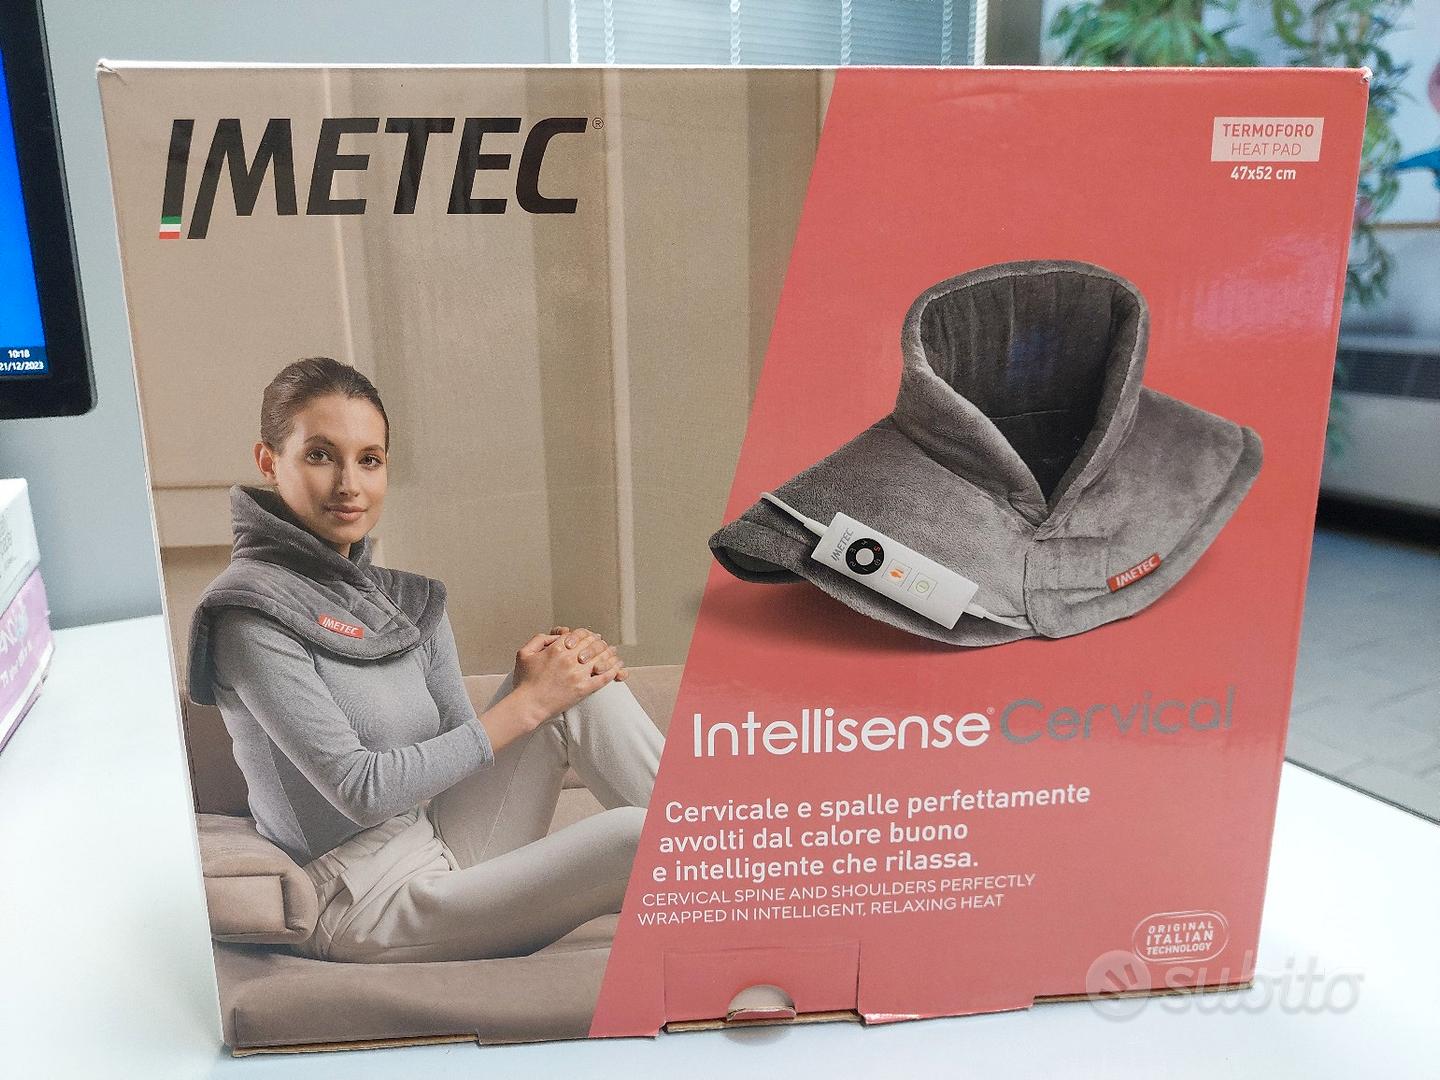 Termoforo IMETEC - Elettrodomestici In vendita a Firenze